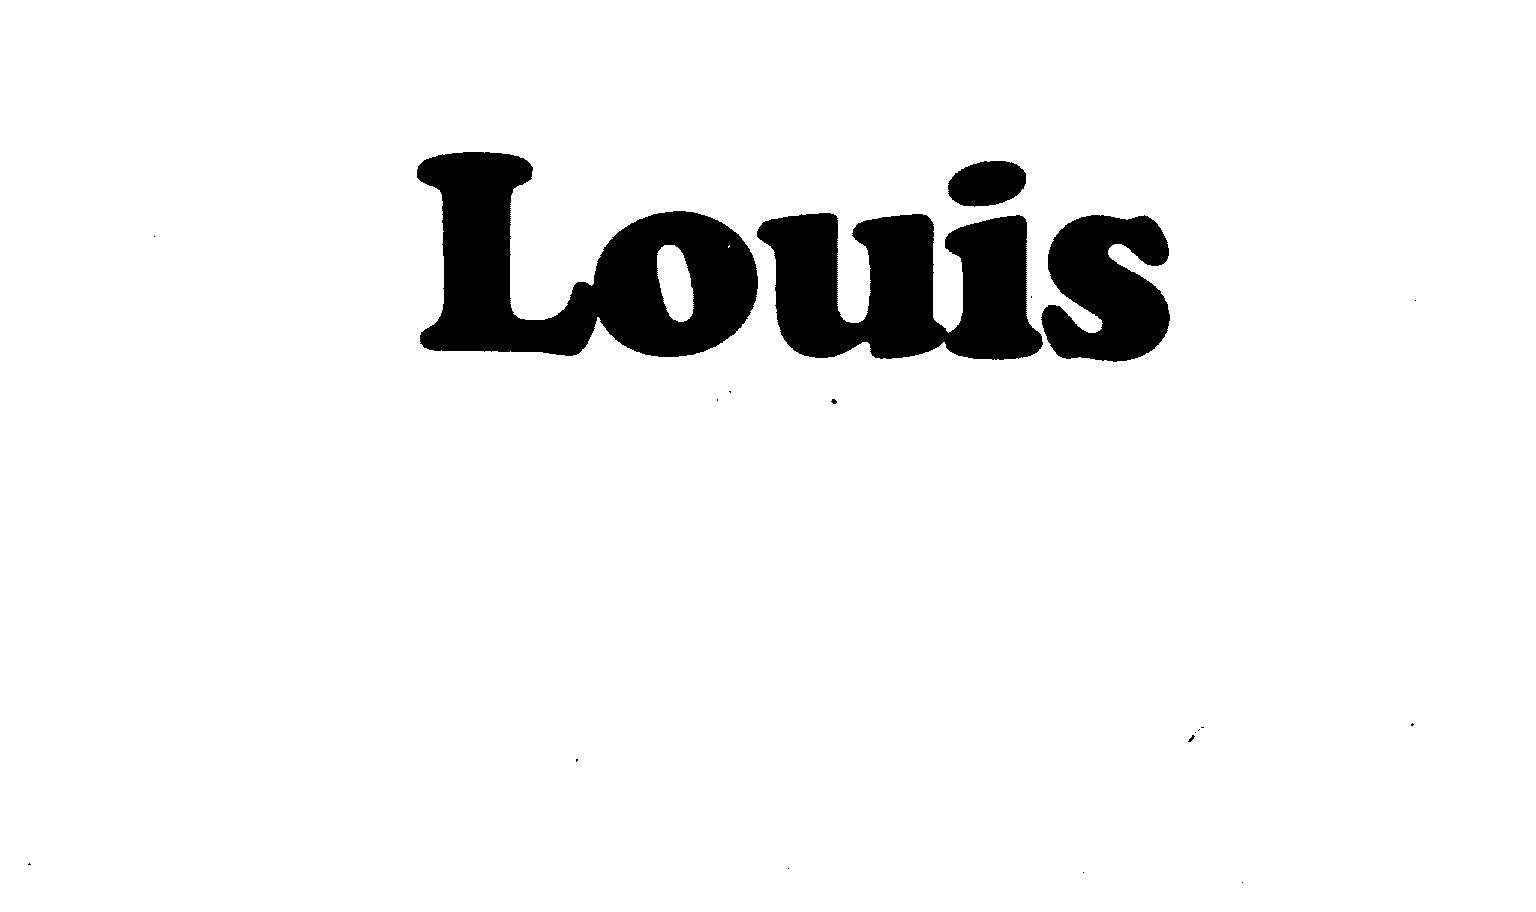 Trademark Logo LOUIS